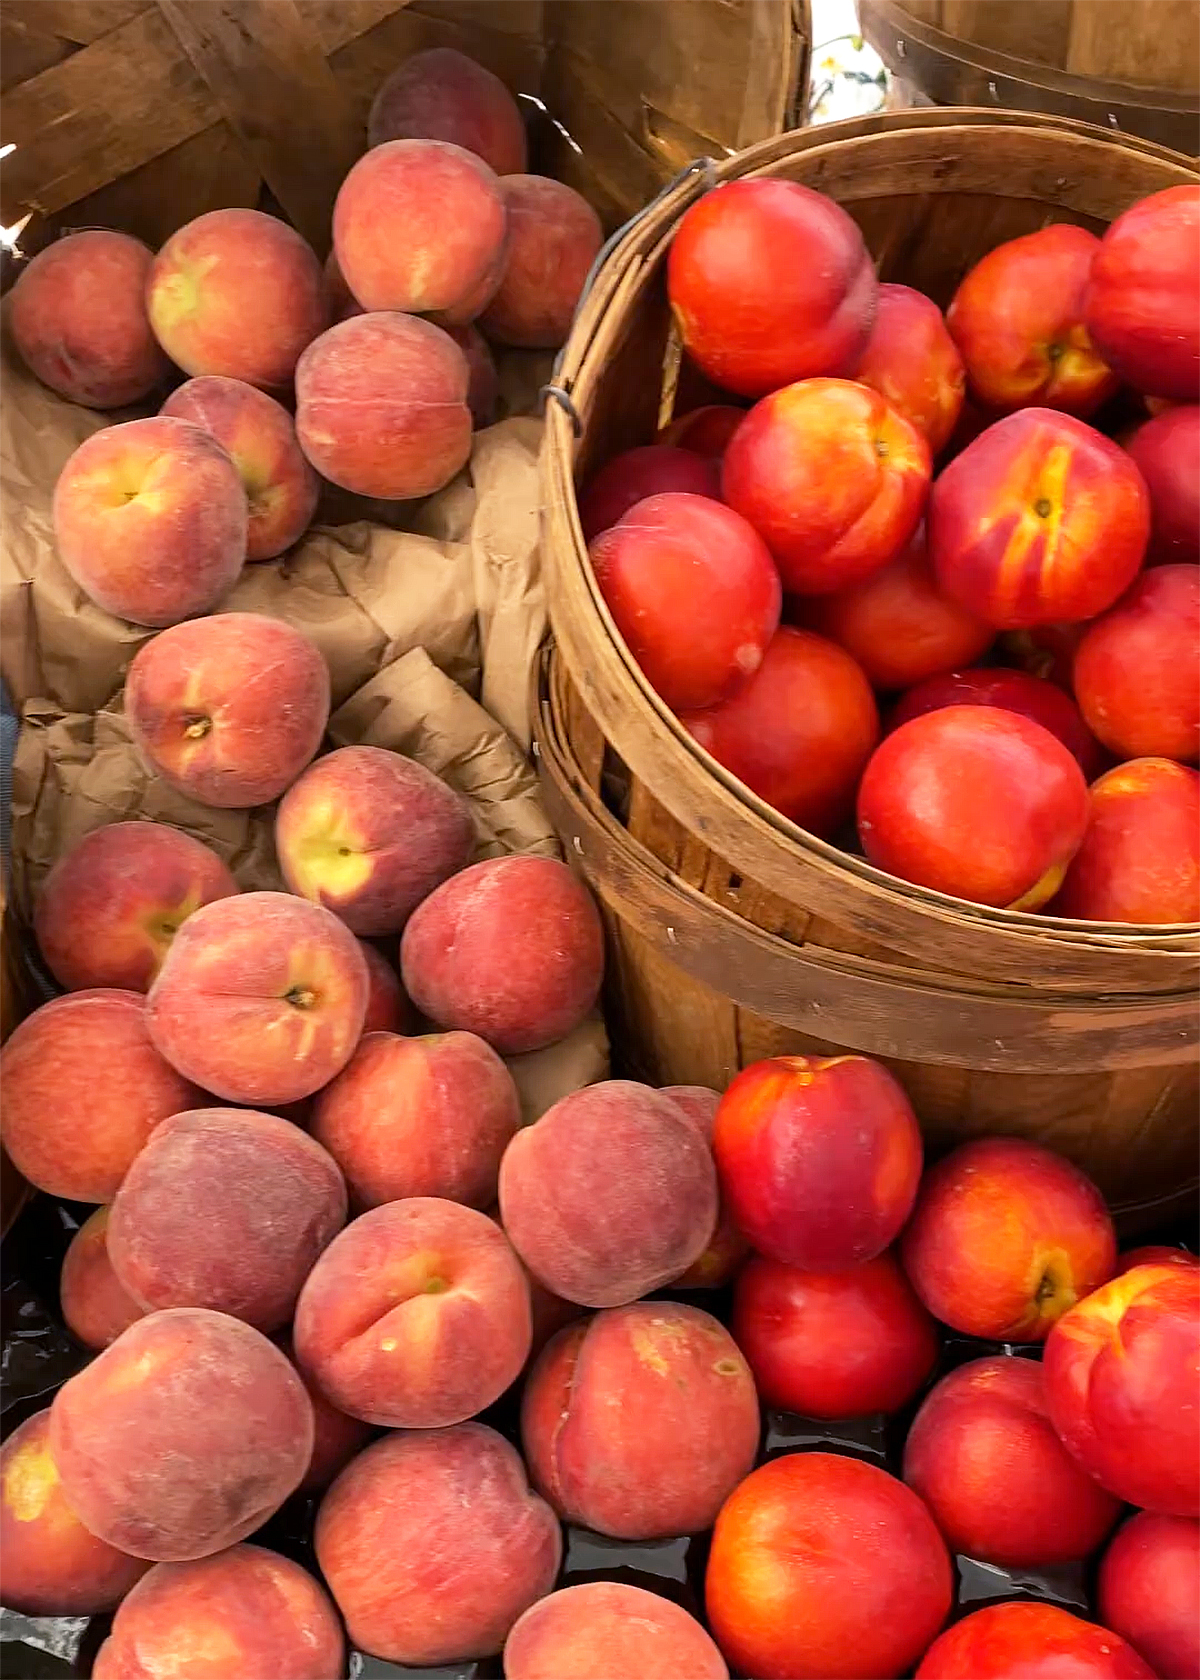 peaches vs nectarines at farmers market